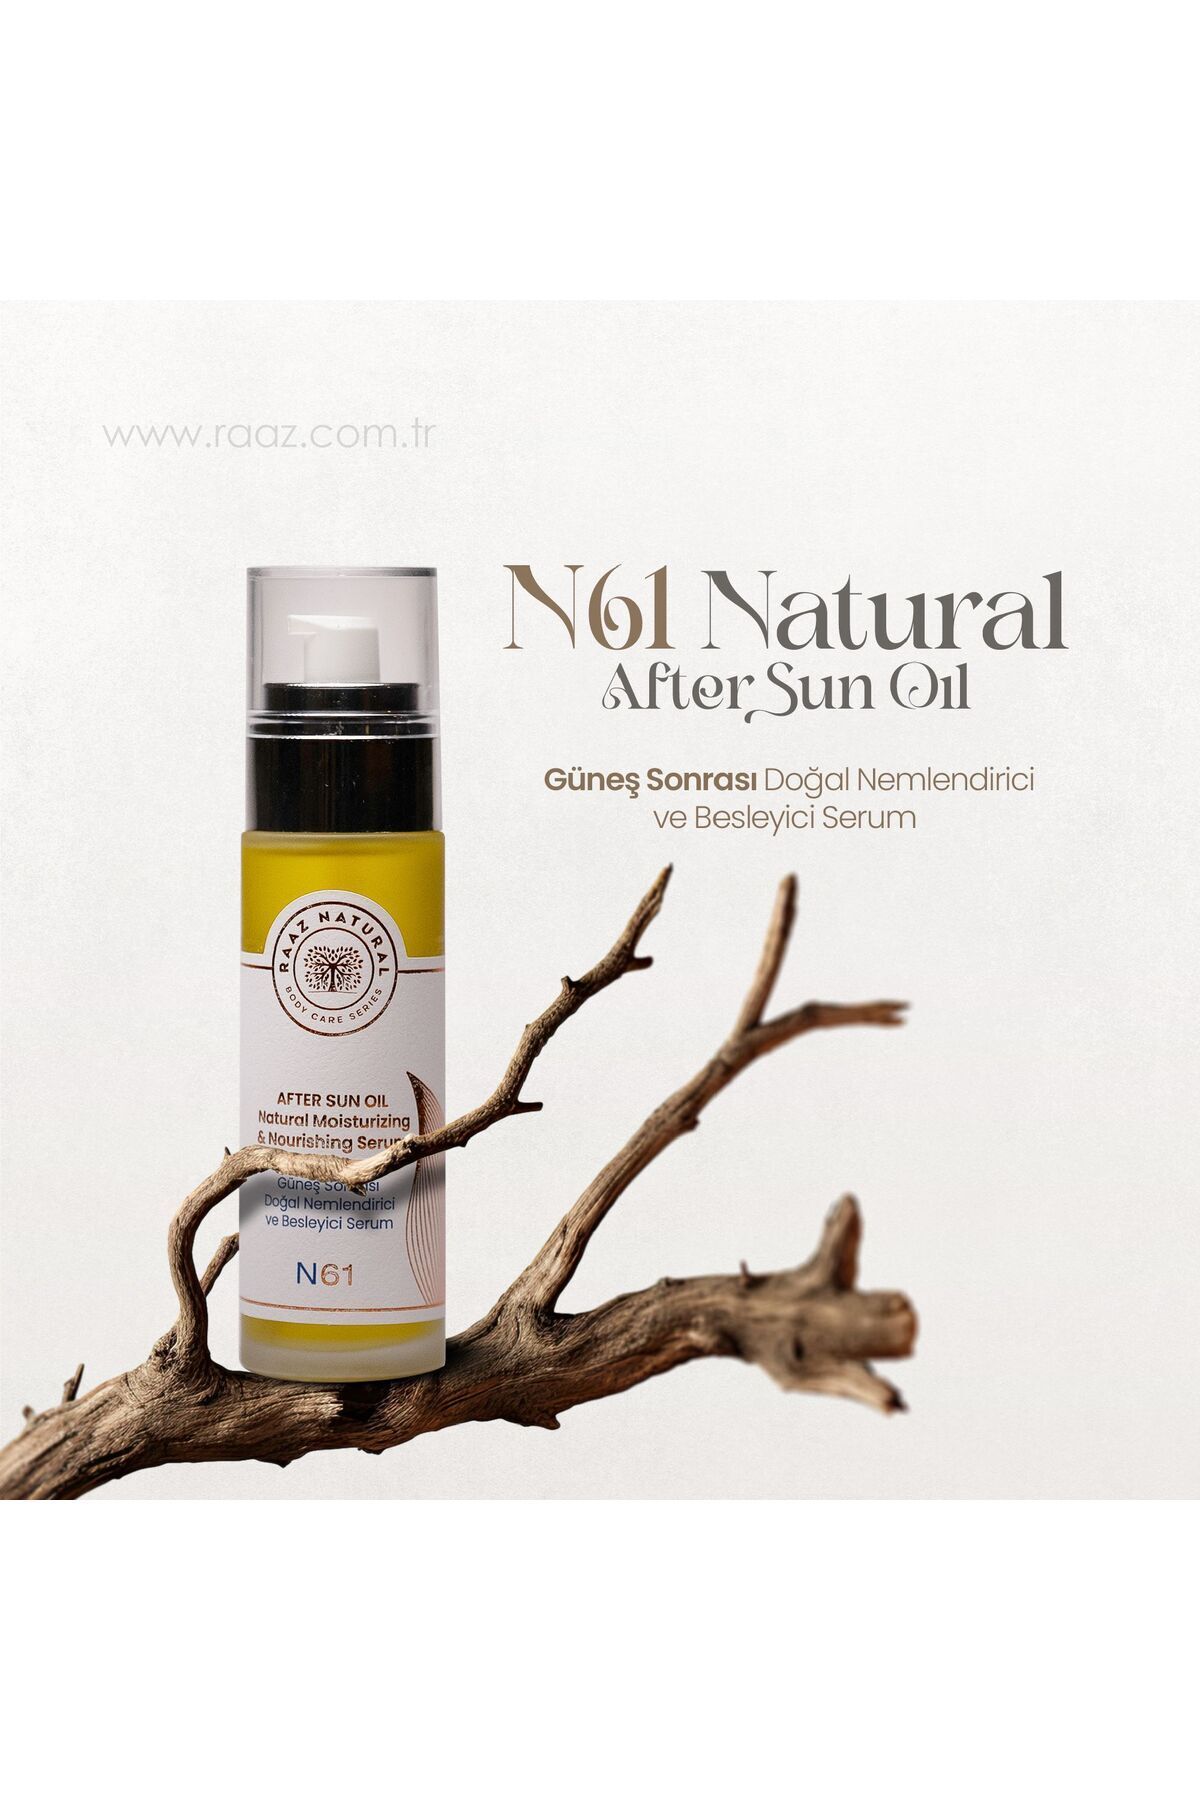 RAAZ N61 Güneş Sonrası Doğal Nemlendirici ve Besleyici Serum Natural after Sun Oil 100 ml